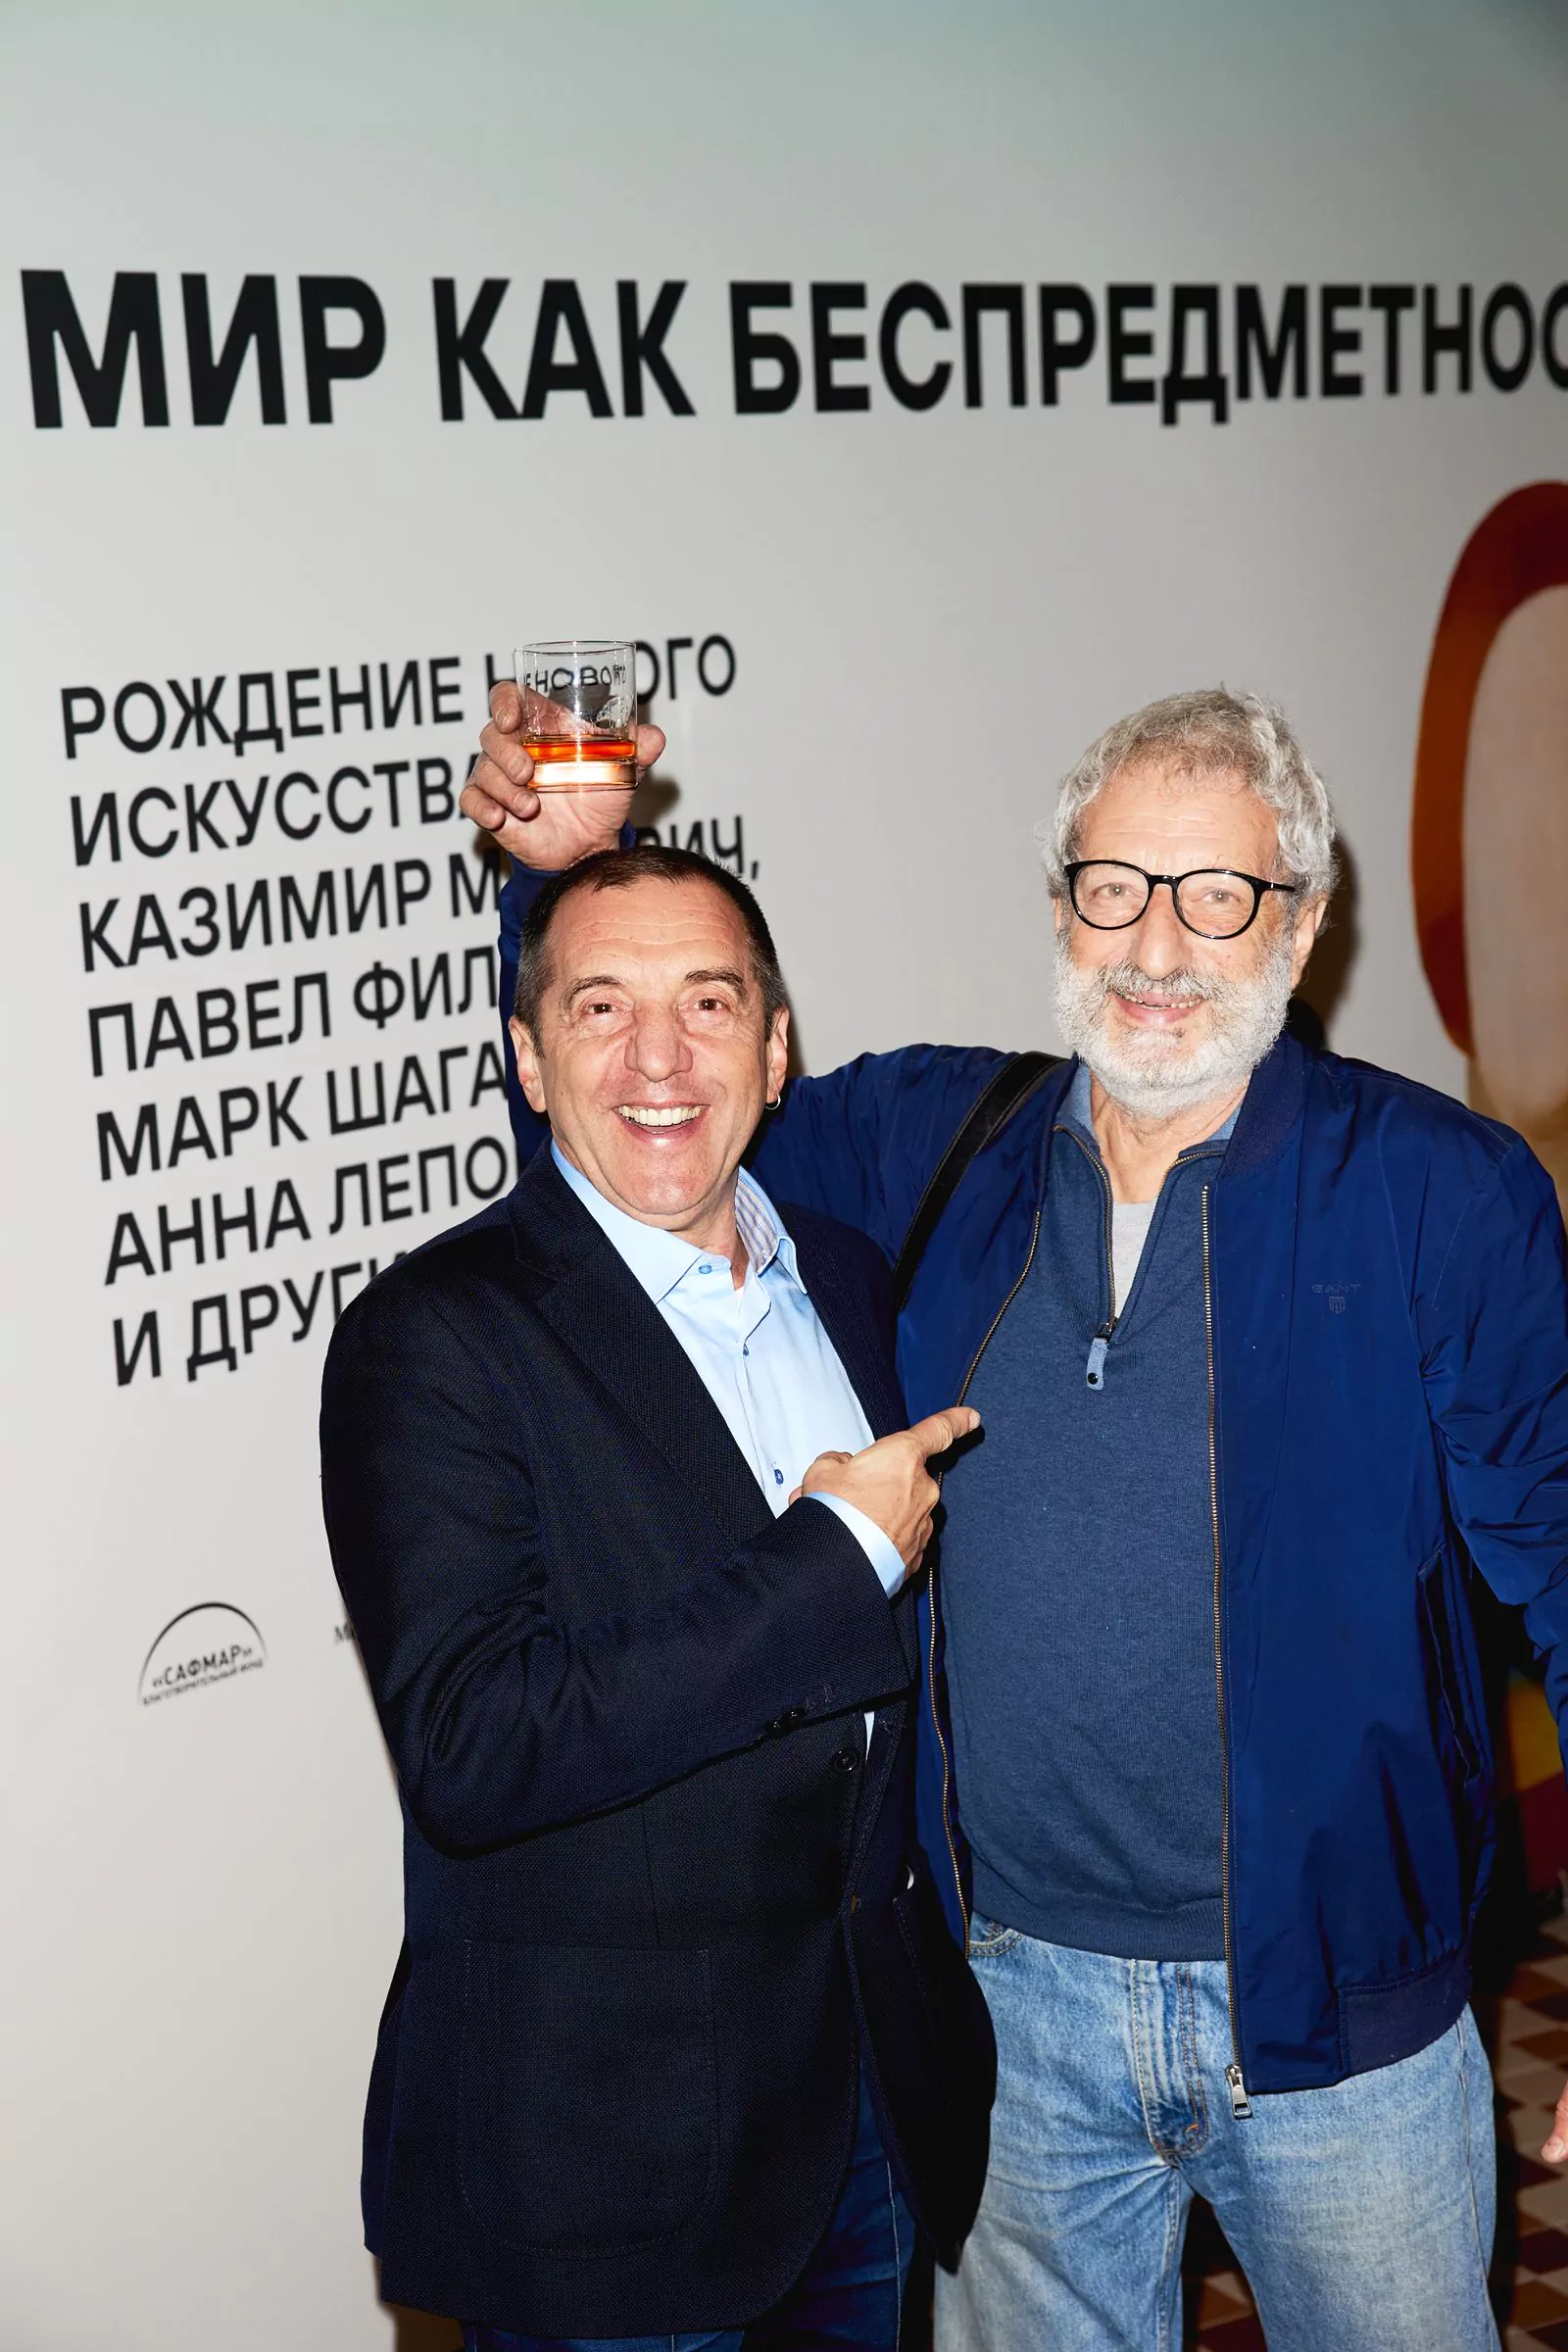 Михаил Крокин и Сергей Цигаль на открытии выставки «Мир как беспредметность»